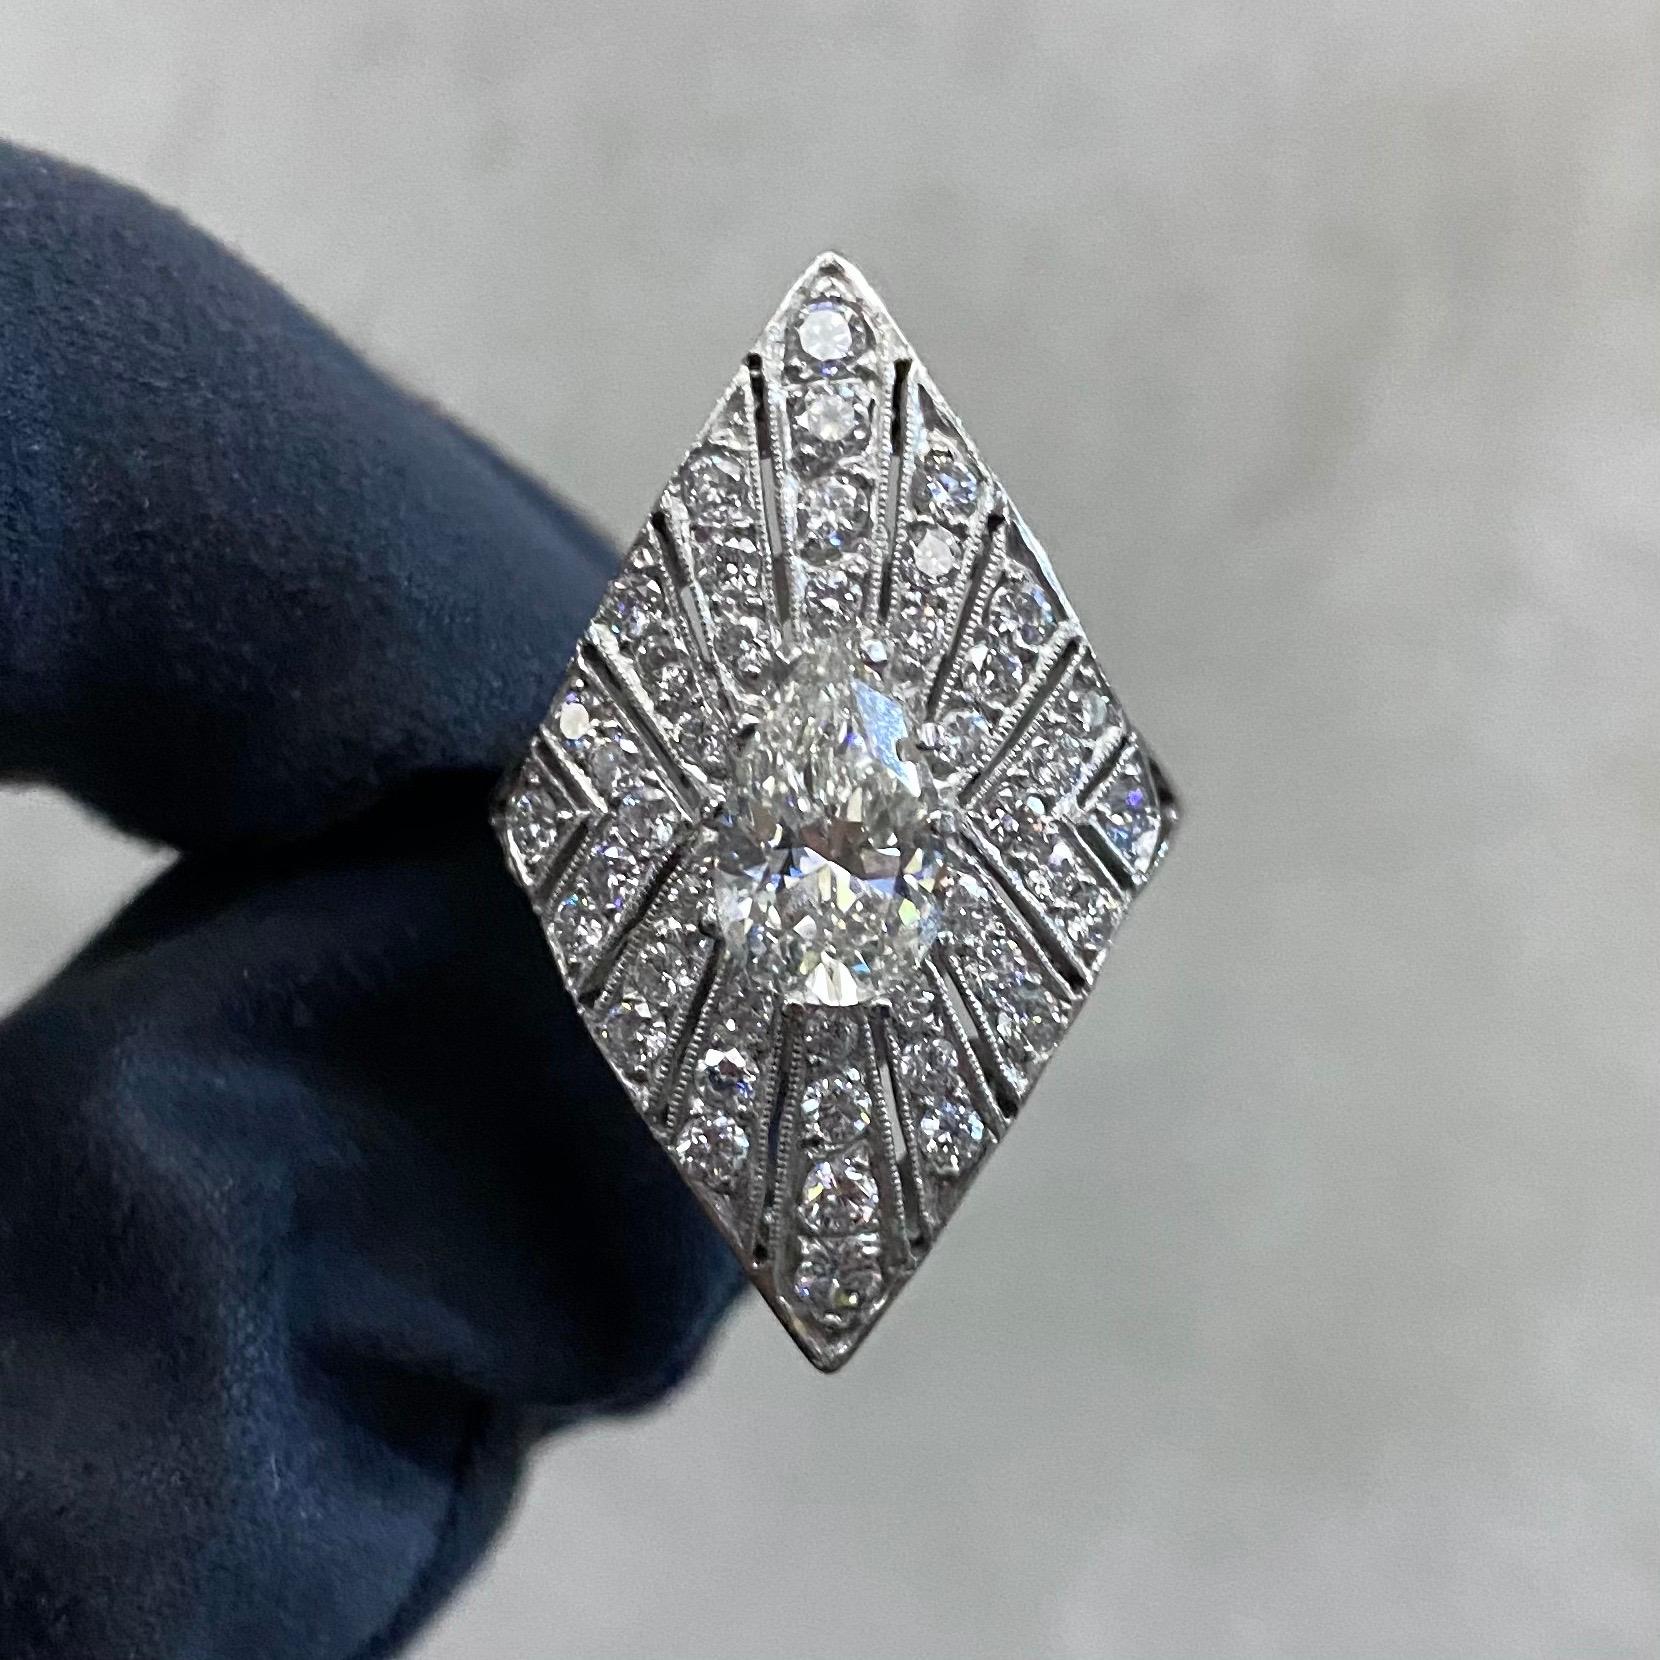 Ein GIA-zertifizierter 1,24-Karat-J VS2-Diamant im Birnenbrillantschliff und ein runder Diamant im Brillantschliff in Schildform, Cocktail- oder Kleiderring aus Platin, ca. 2000er Jahre. Ein spektakuläres Schmuckstück im Art-Déco-Stil mit